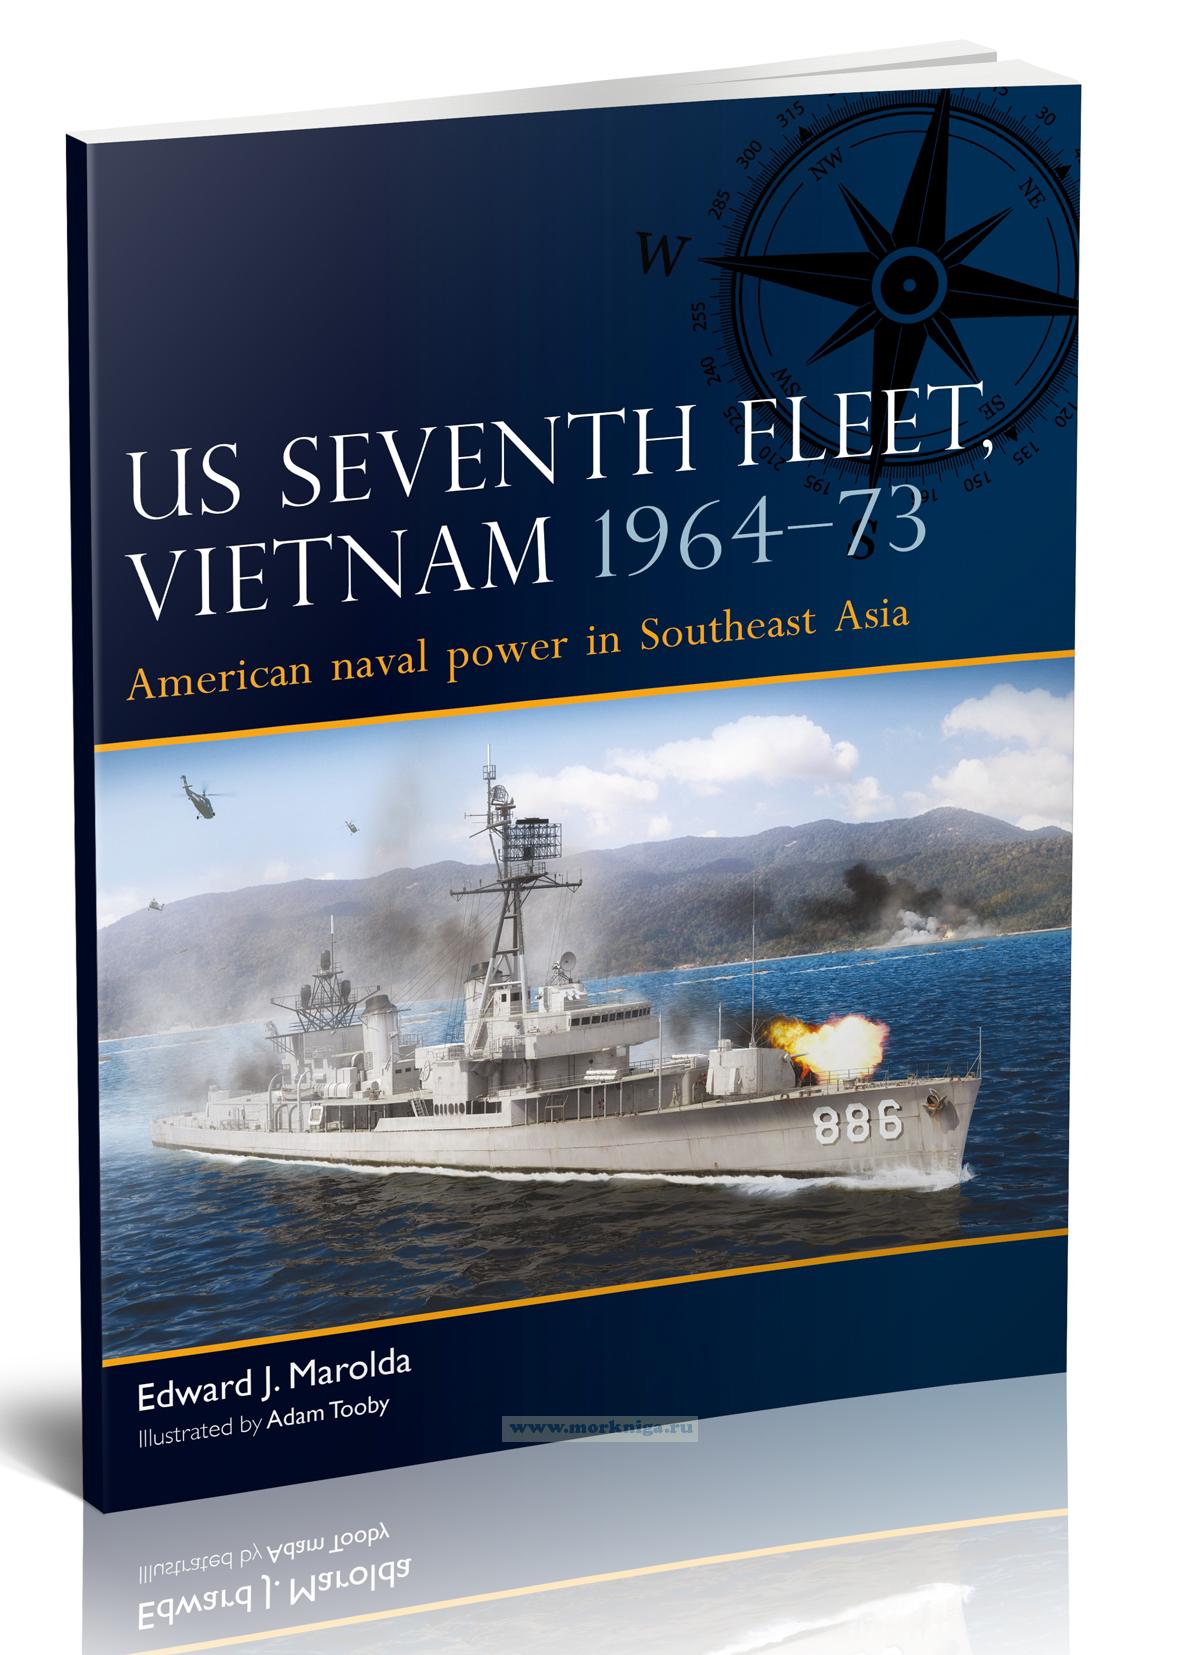 US Seventh fleet, Vietnam 1964-73 American naval power in Southeast Asia/Седьмой флот США во Вьетнаме 1964-73 года Американская военно-морская мощь в Юго-Восточной Азии